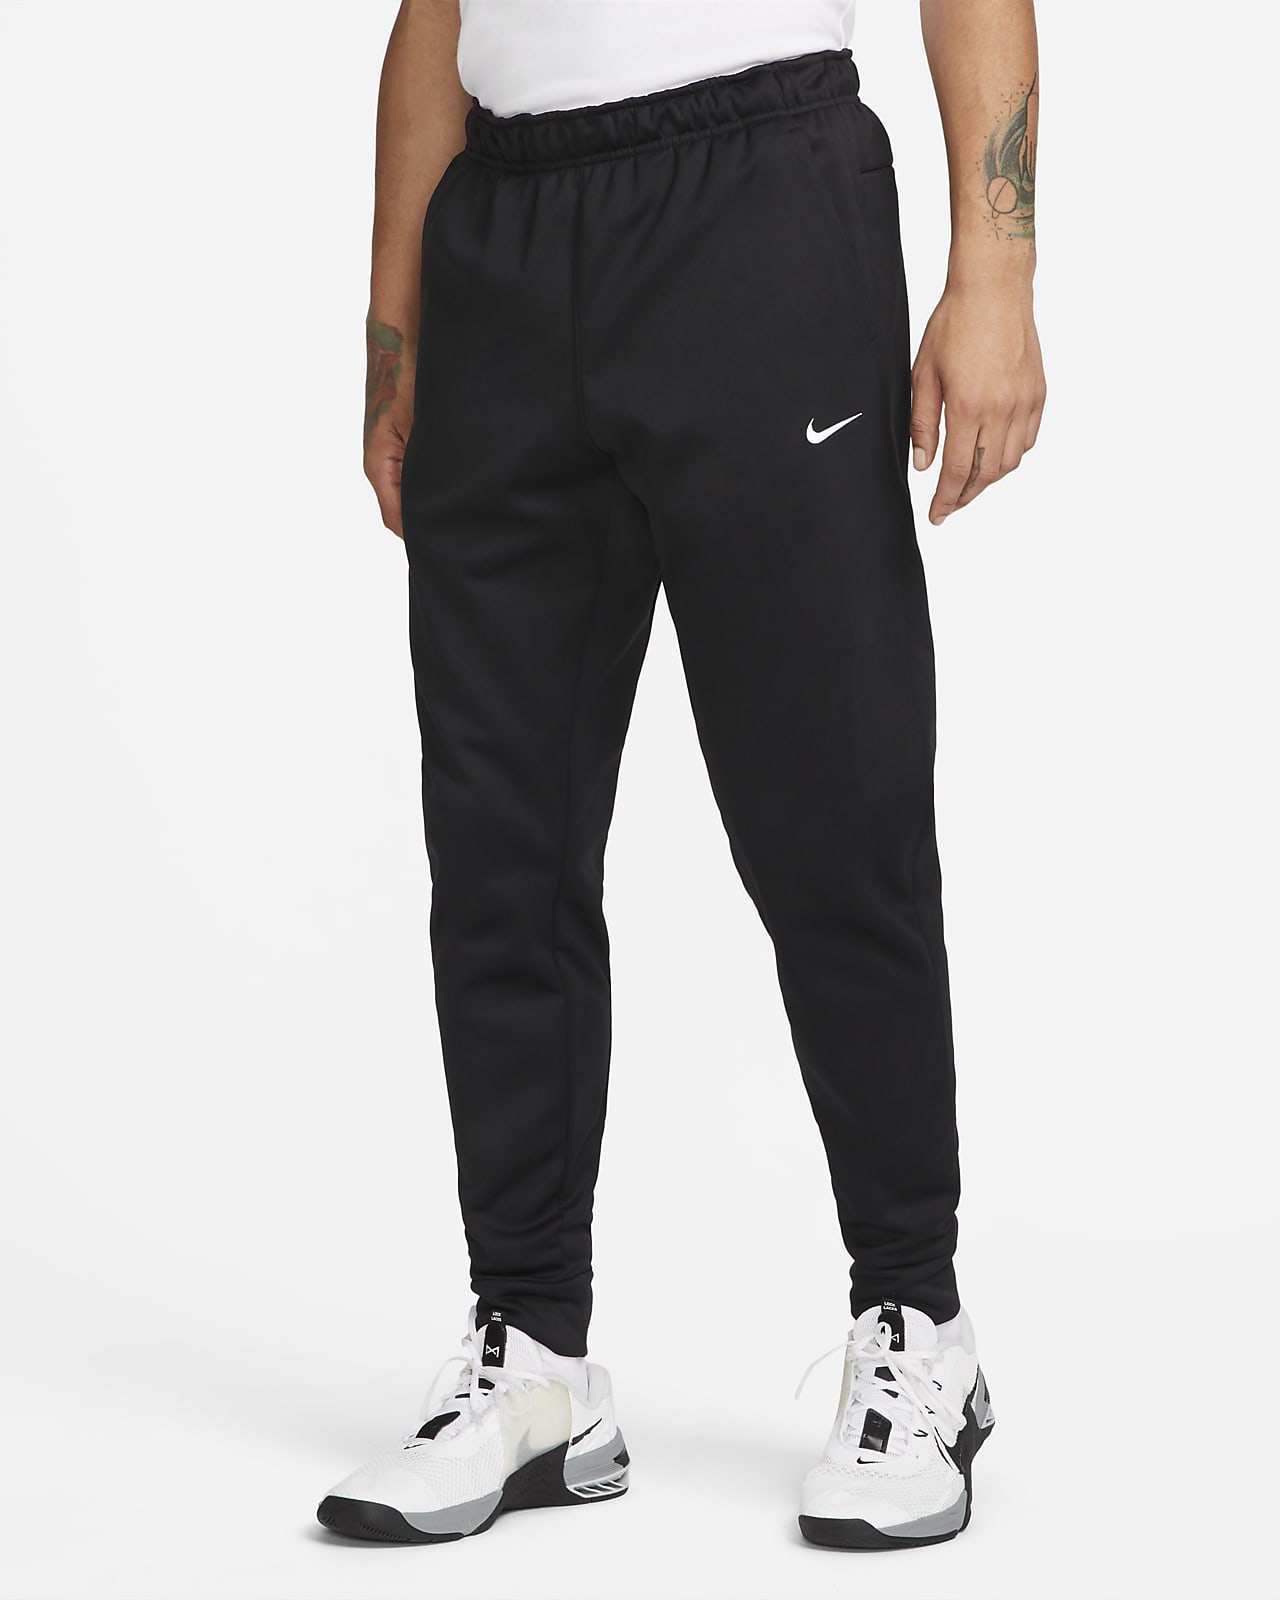 Pants de entrenamiento entallados para Nike Nike.com